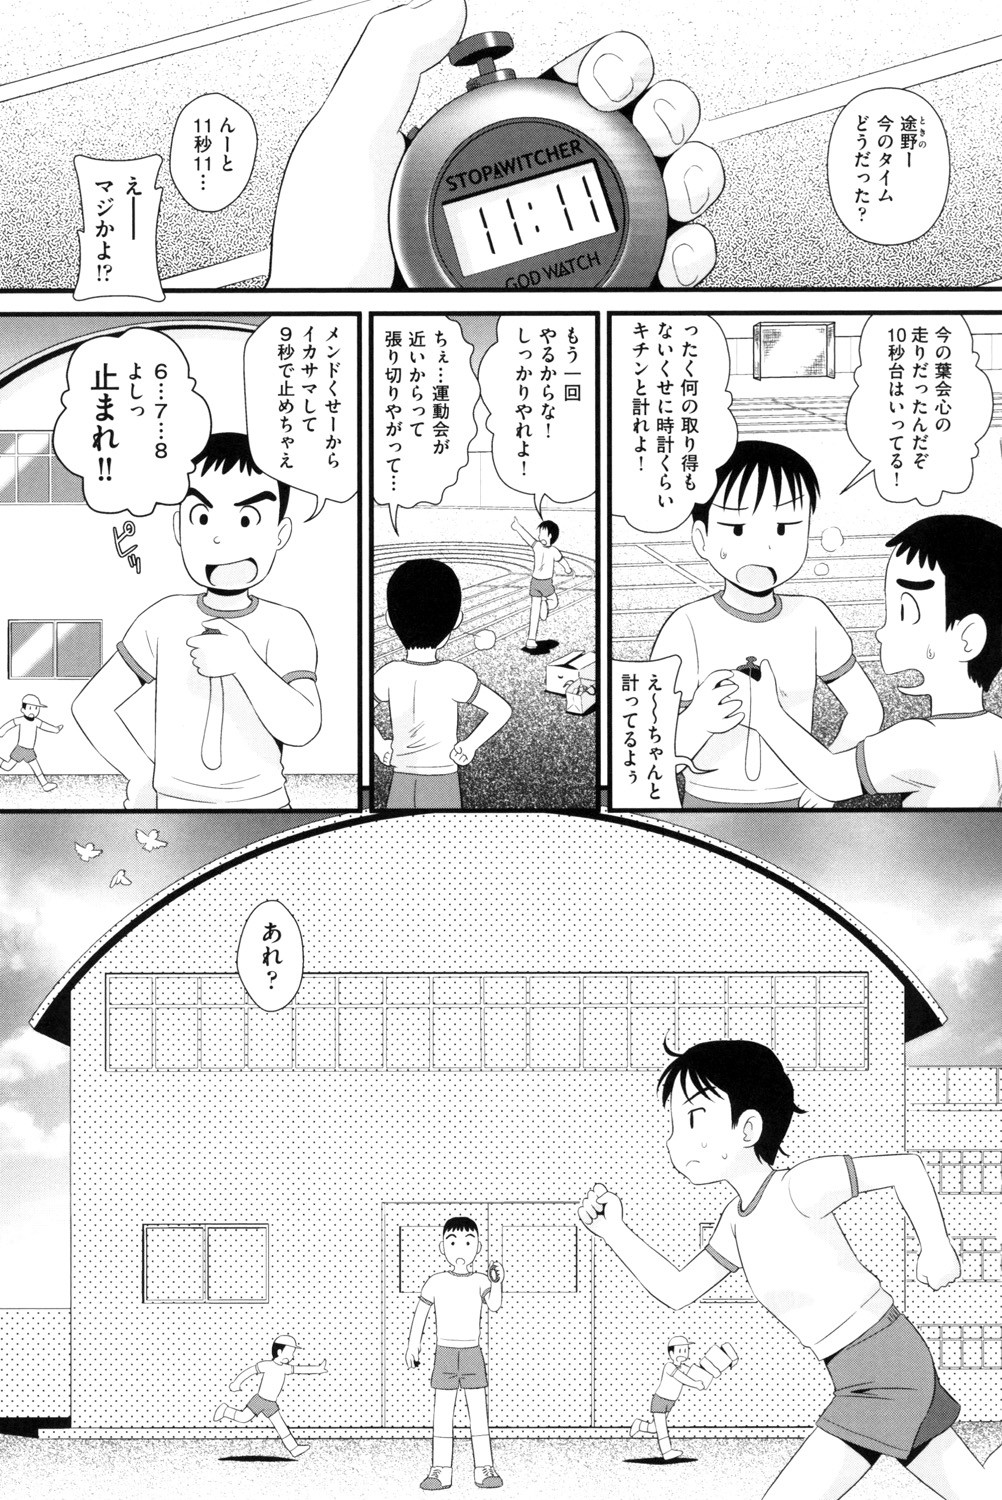 [Anthology] Shoujo Kumikyoku 13 [Digital] page 3 full